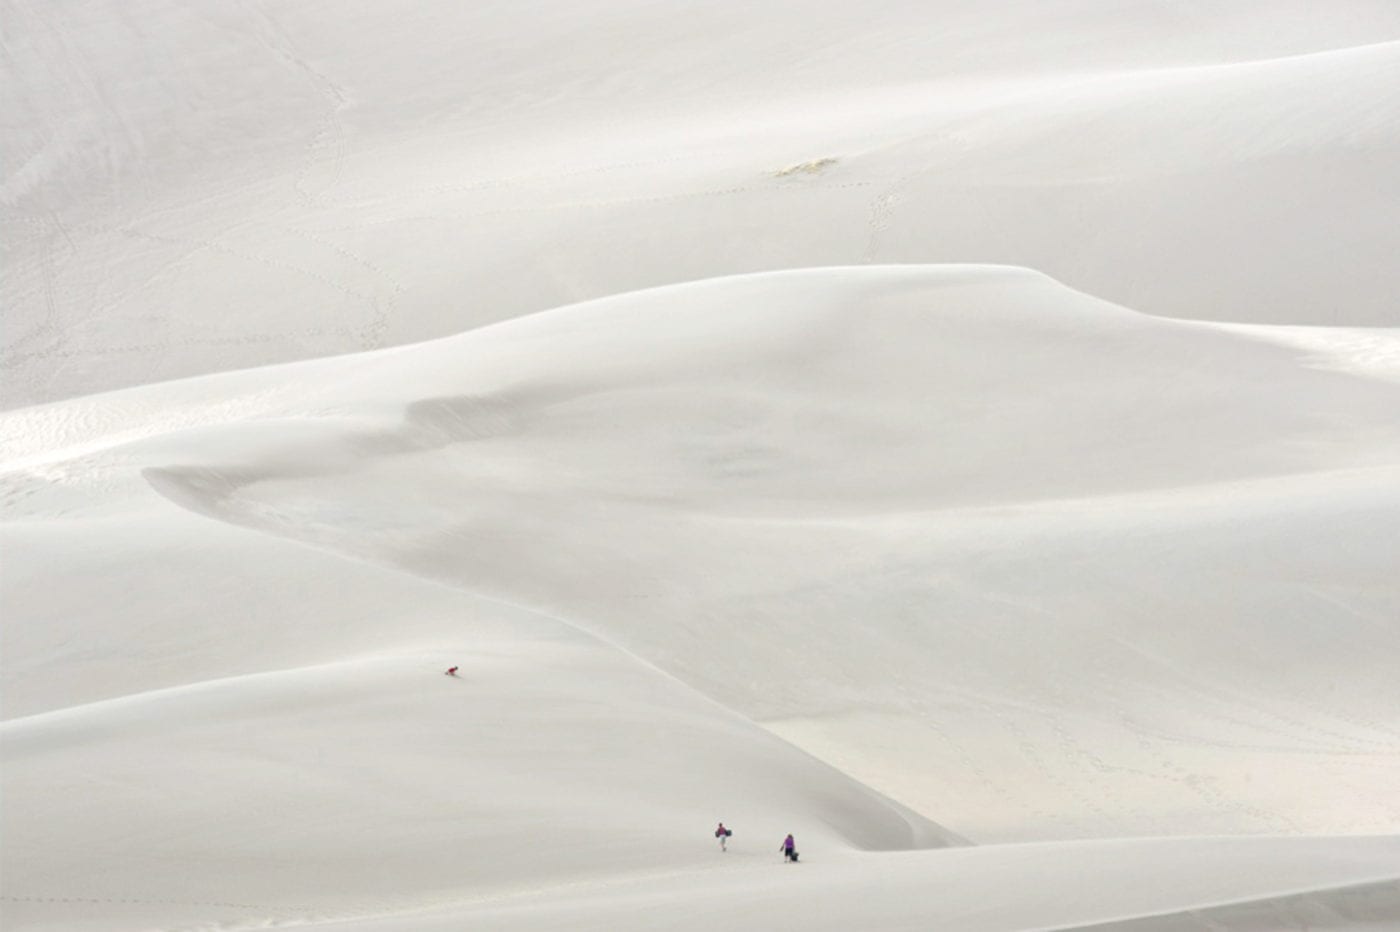 Renate Aller, Ocean | Desert #5, Great Sand Dunes